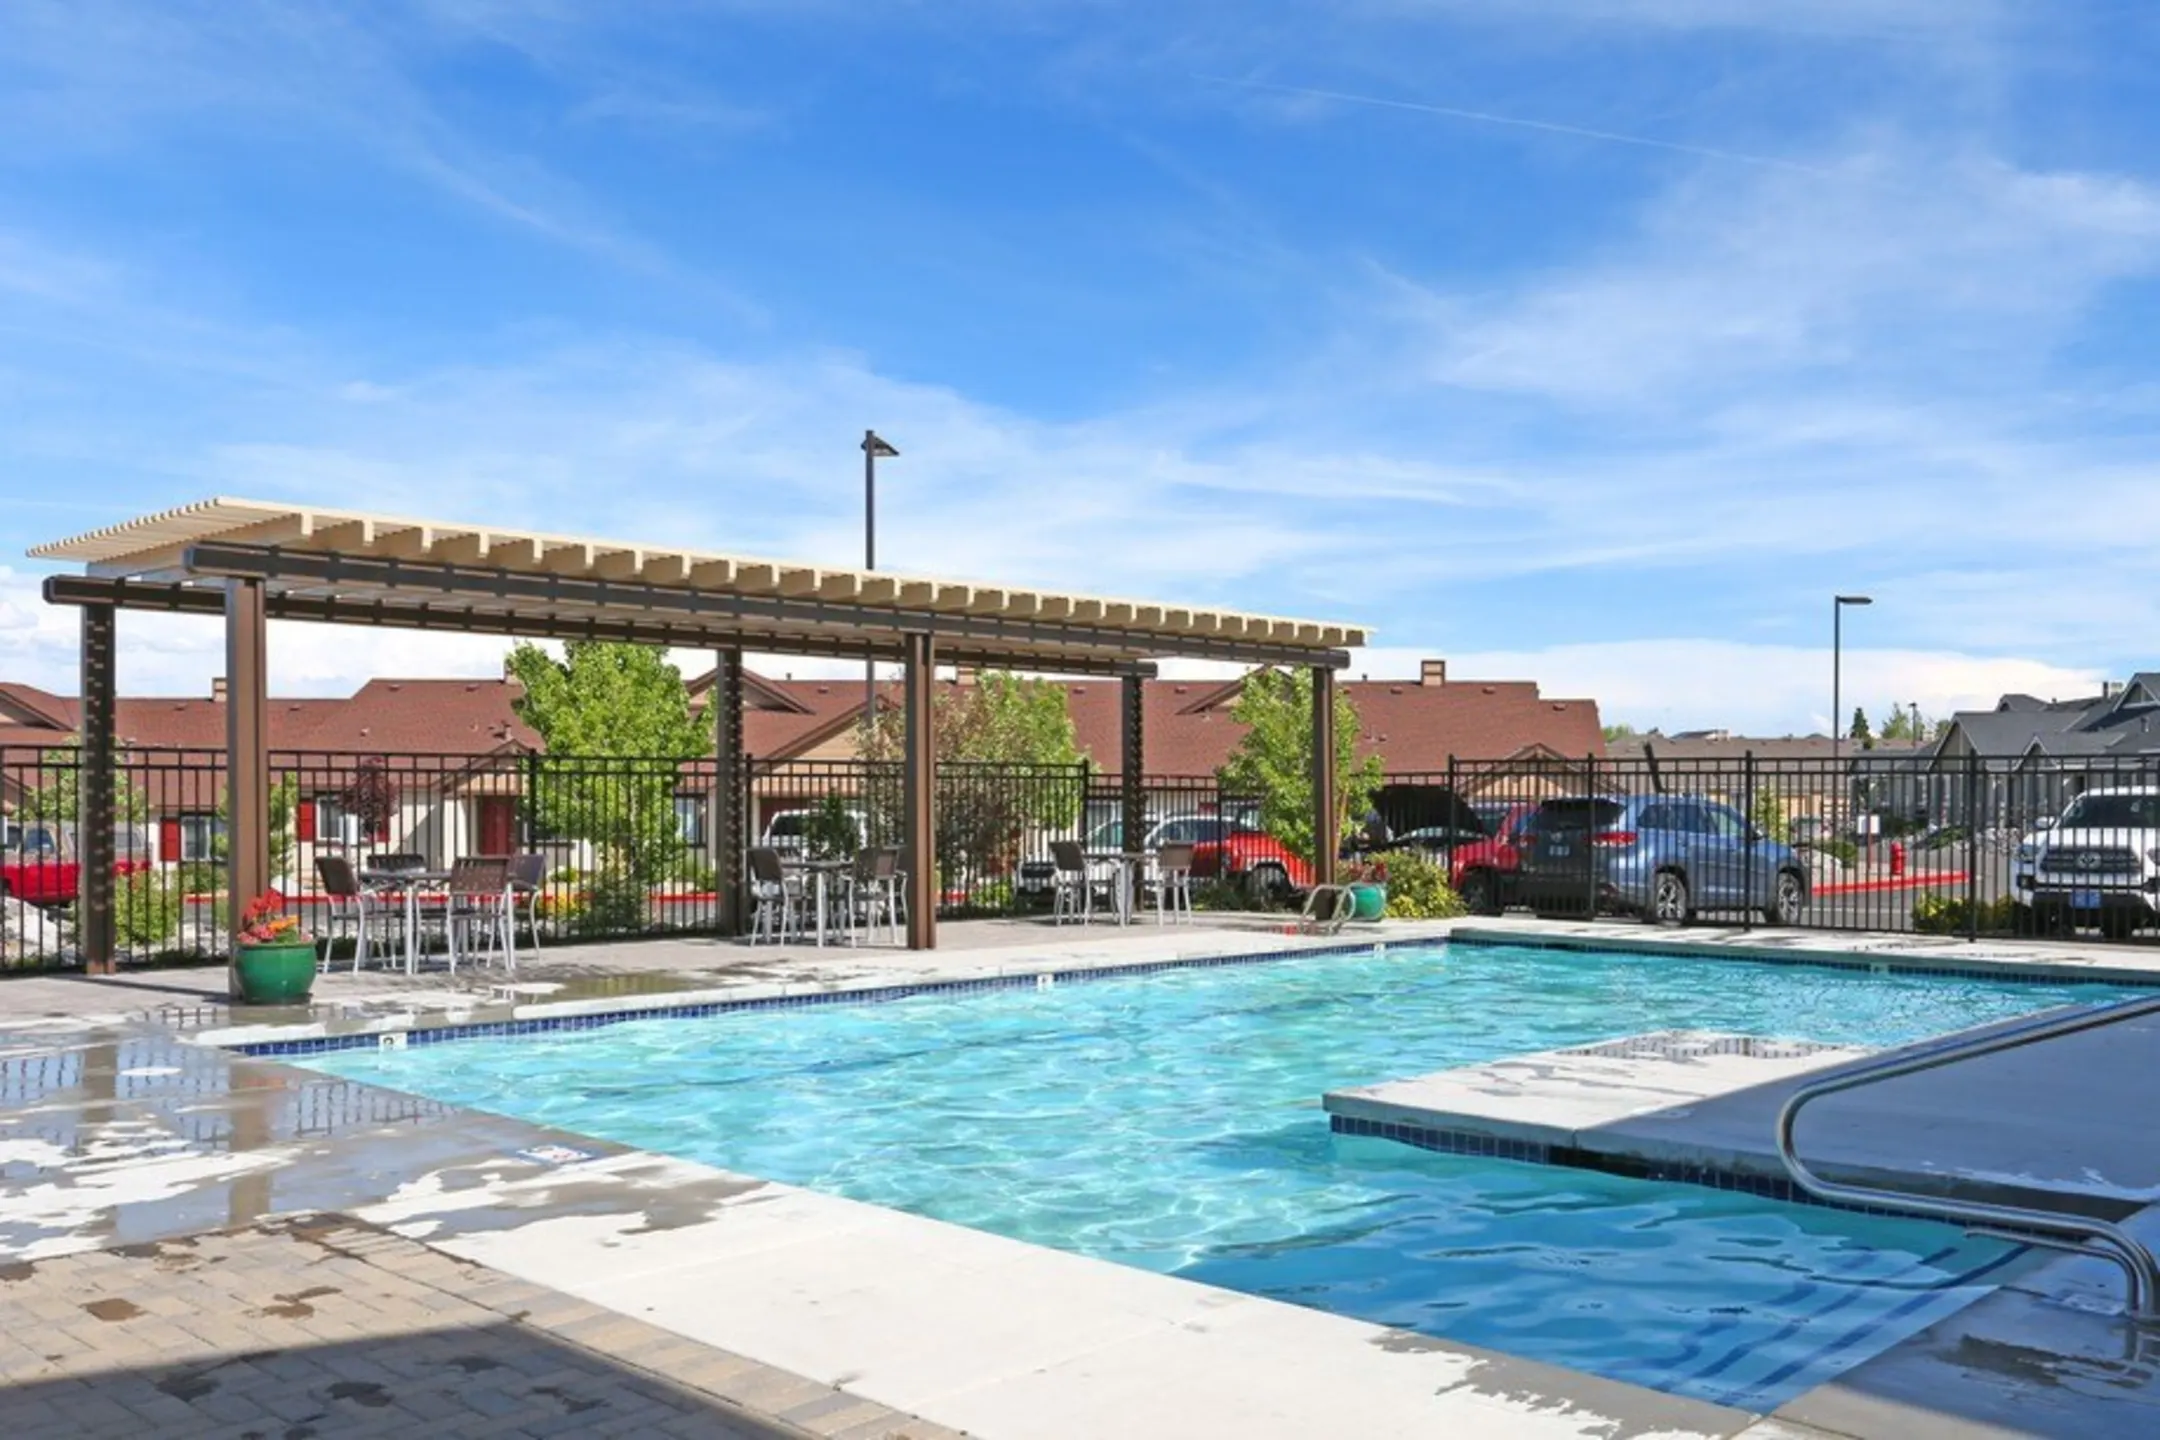 Pool - The Bungalows at Sky Vista - Reno, NV